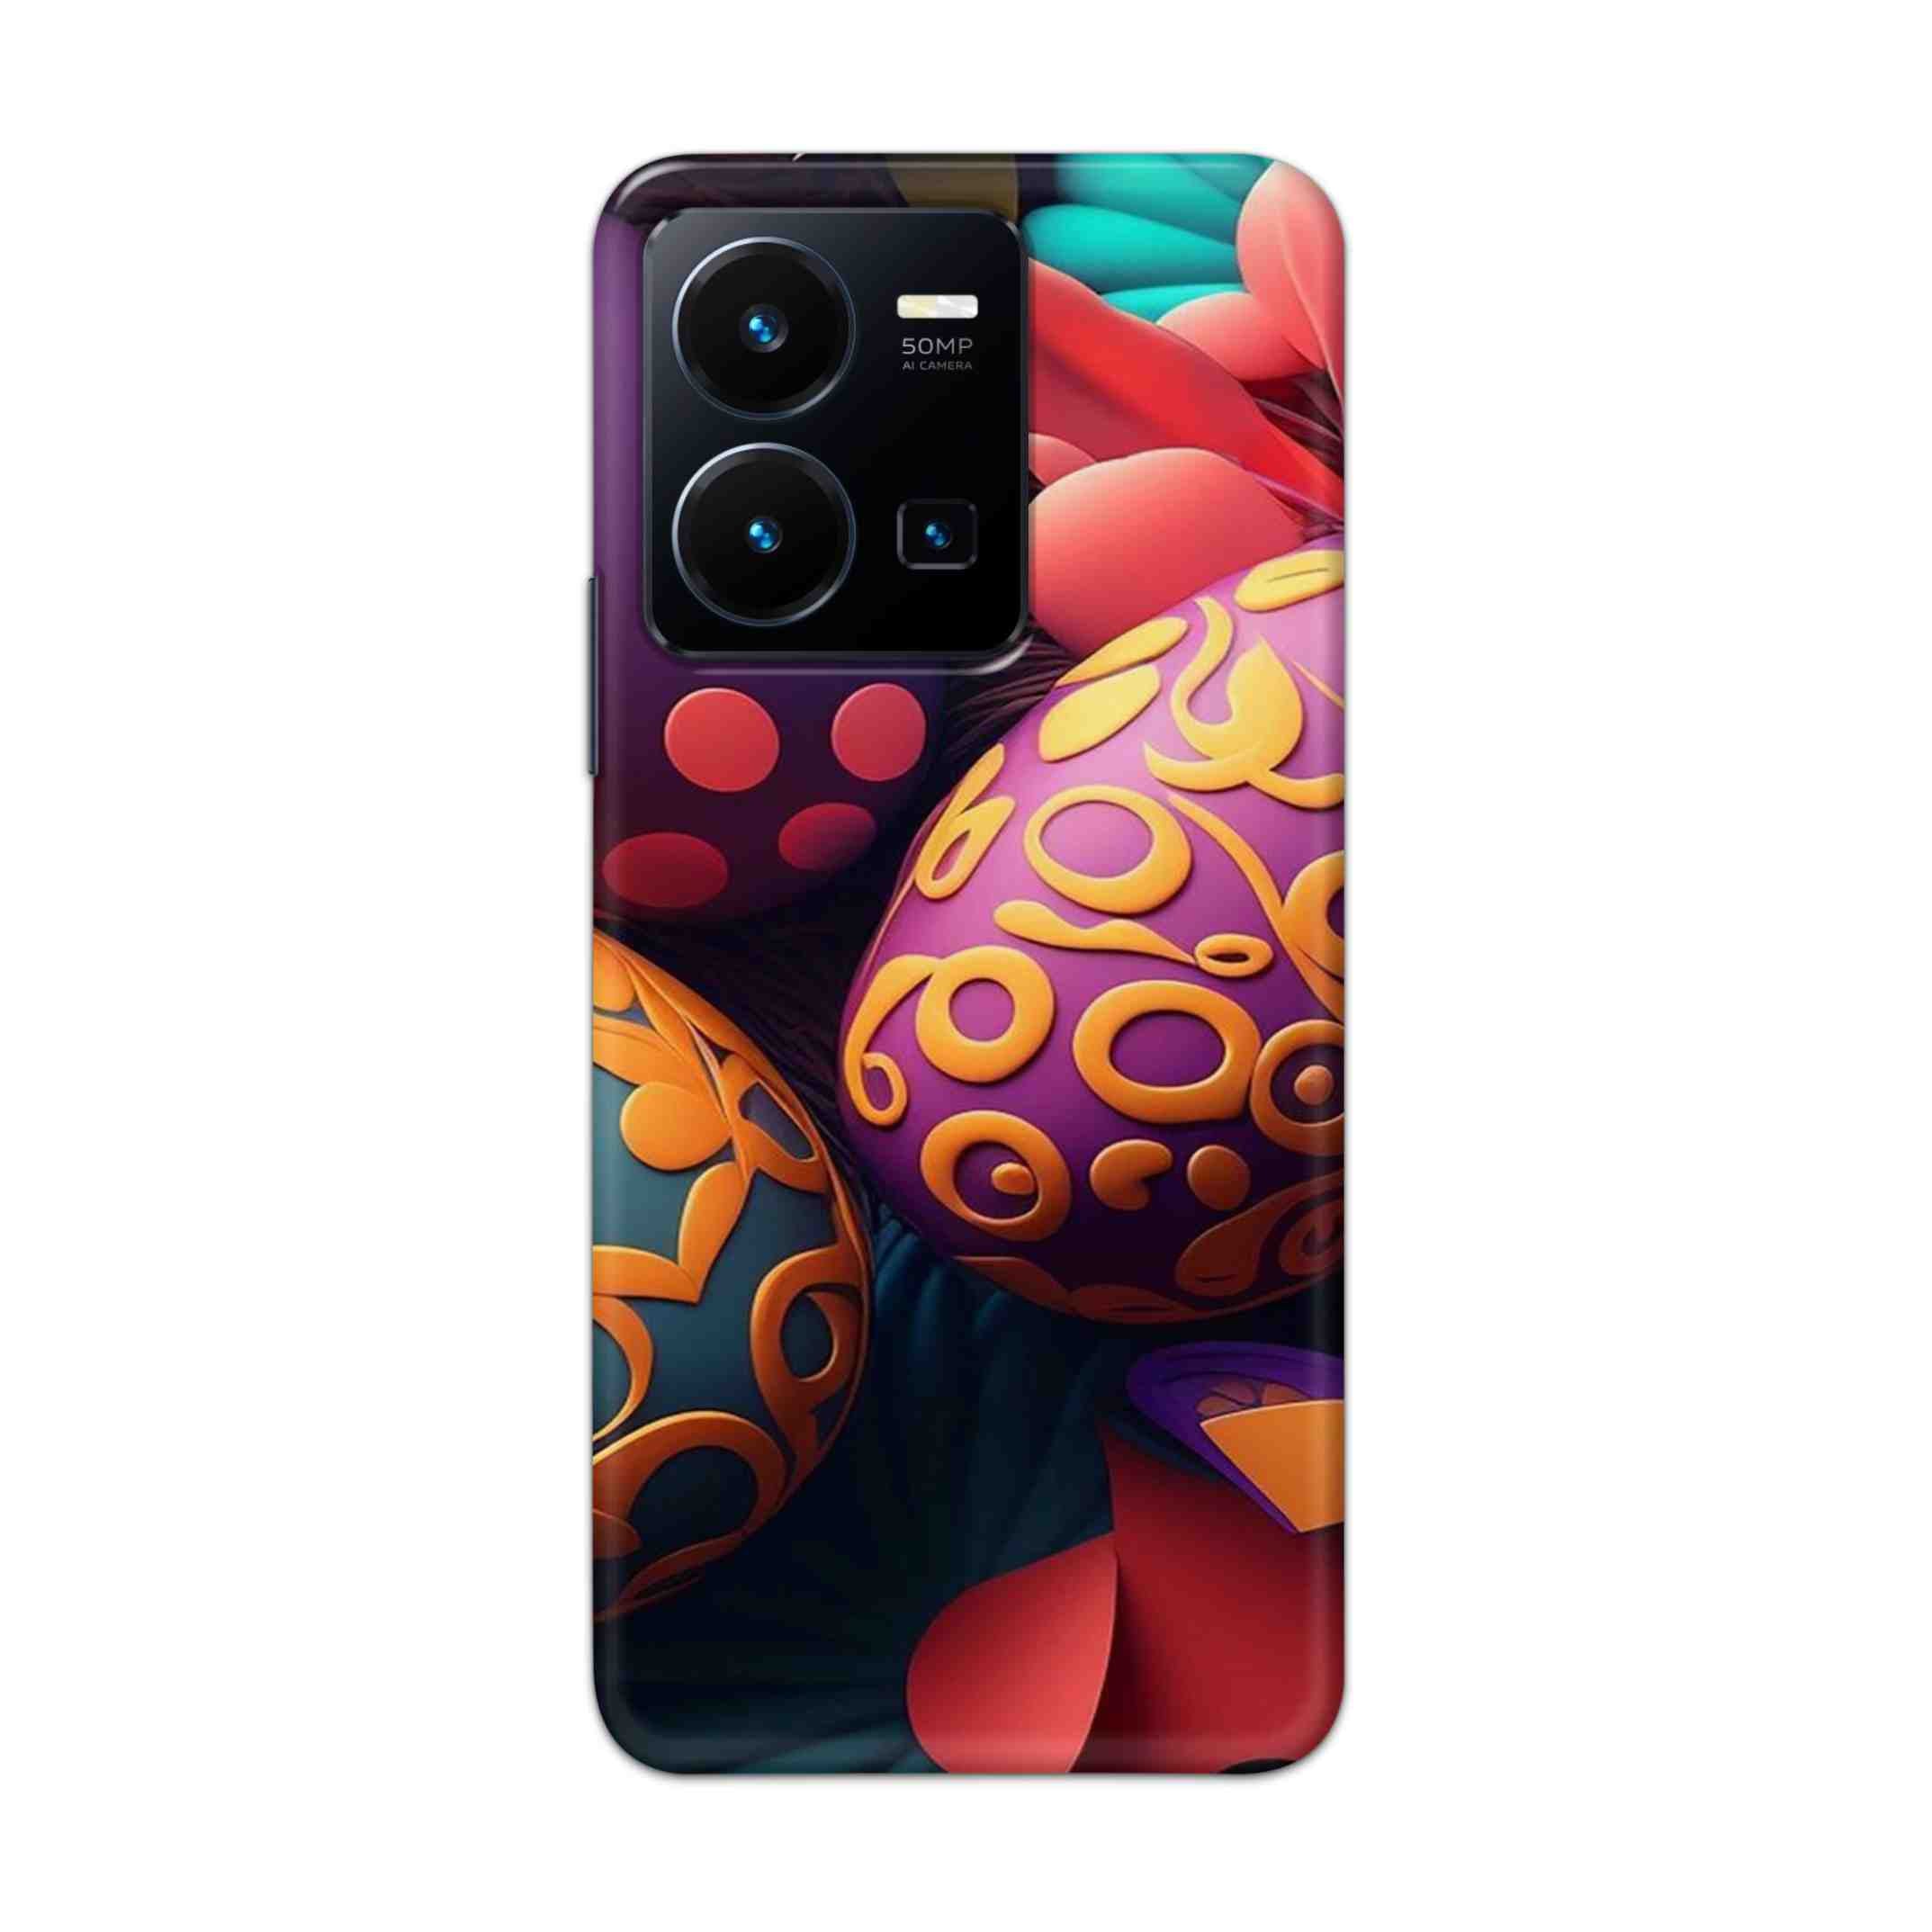 Buy Easter Egg Hard Back Mobile Phone Case Cover For Vivo Y35 2022 Online